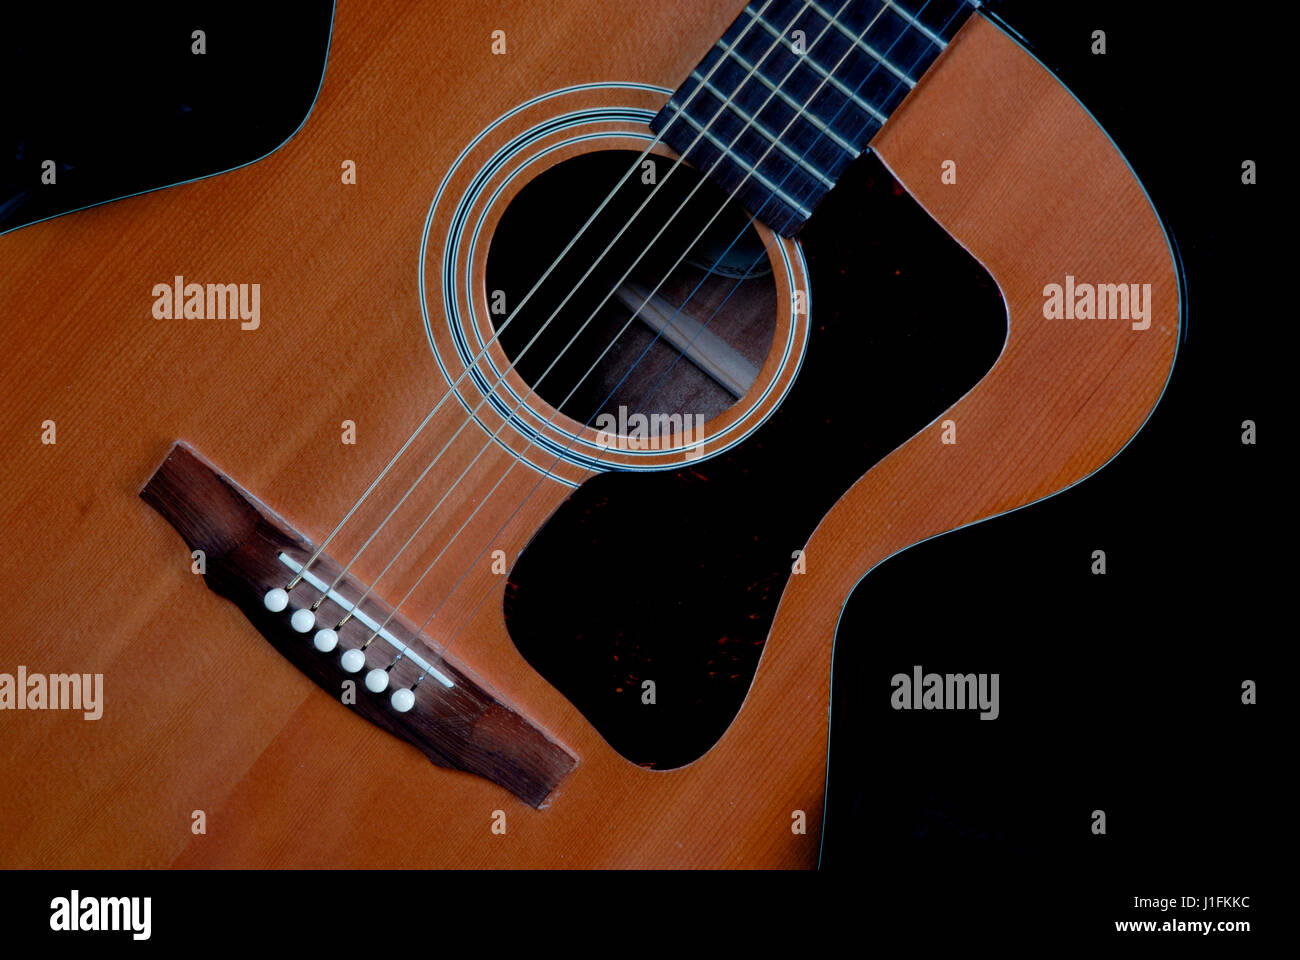 Instrument de musique guitare acoustique Banque D'Images